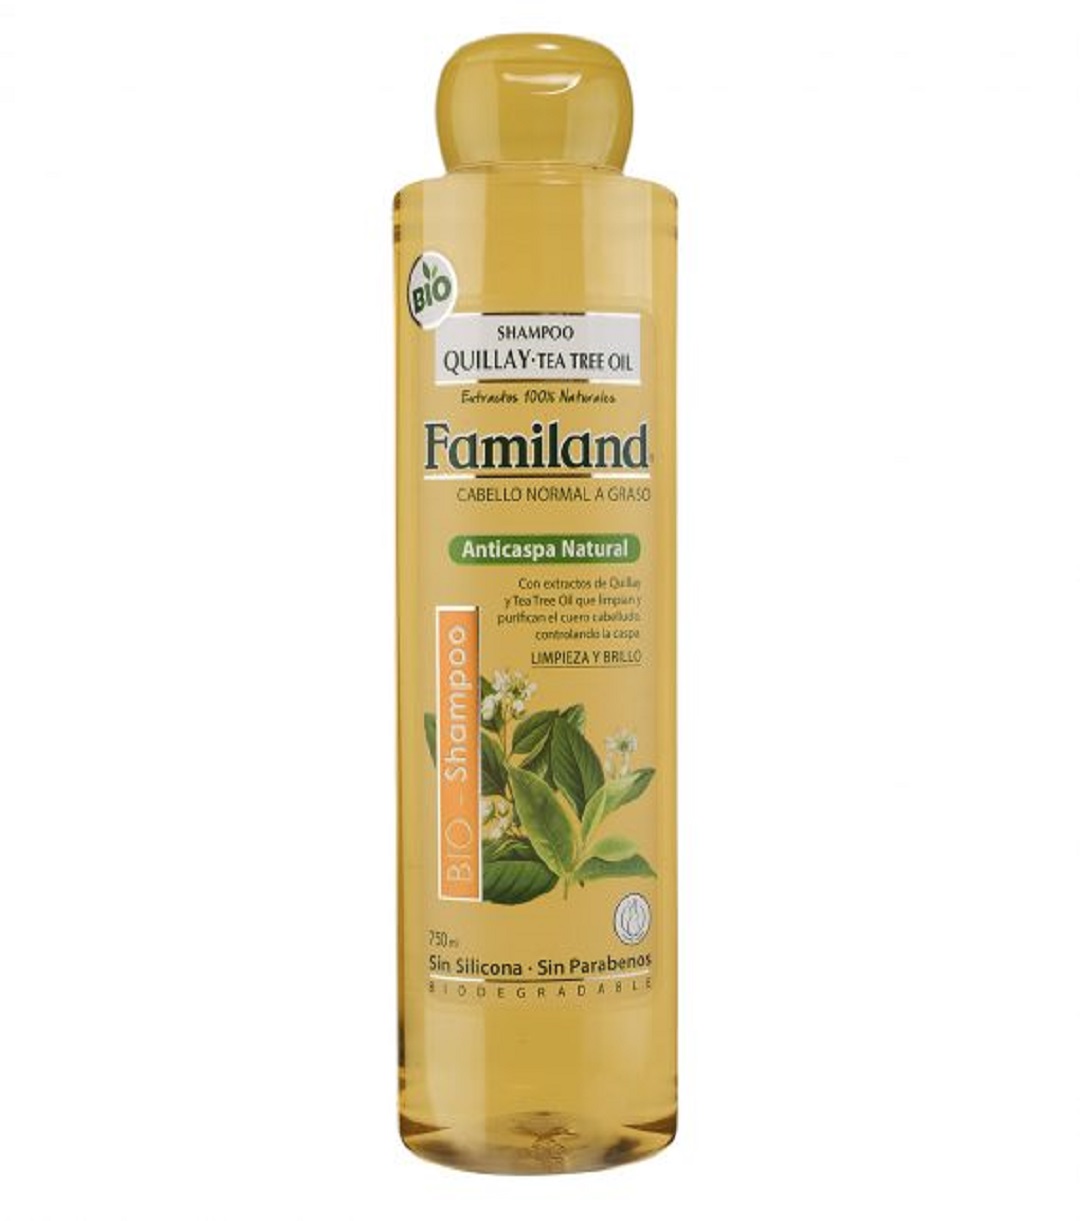 Shampoo Familand quillay-Tea-Tree Oil750ml